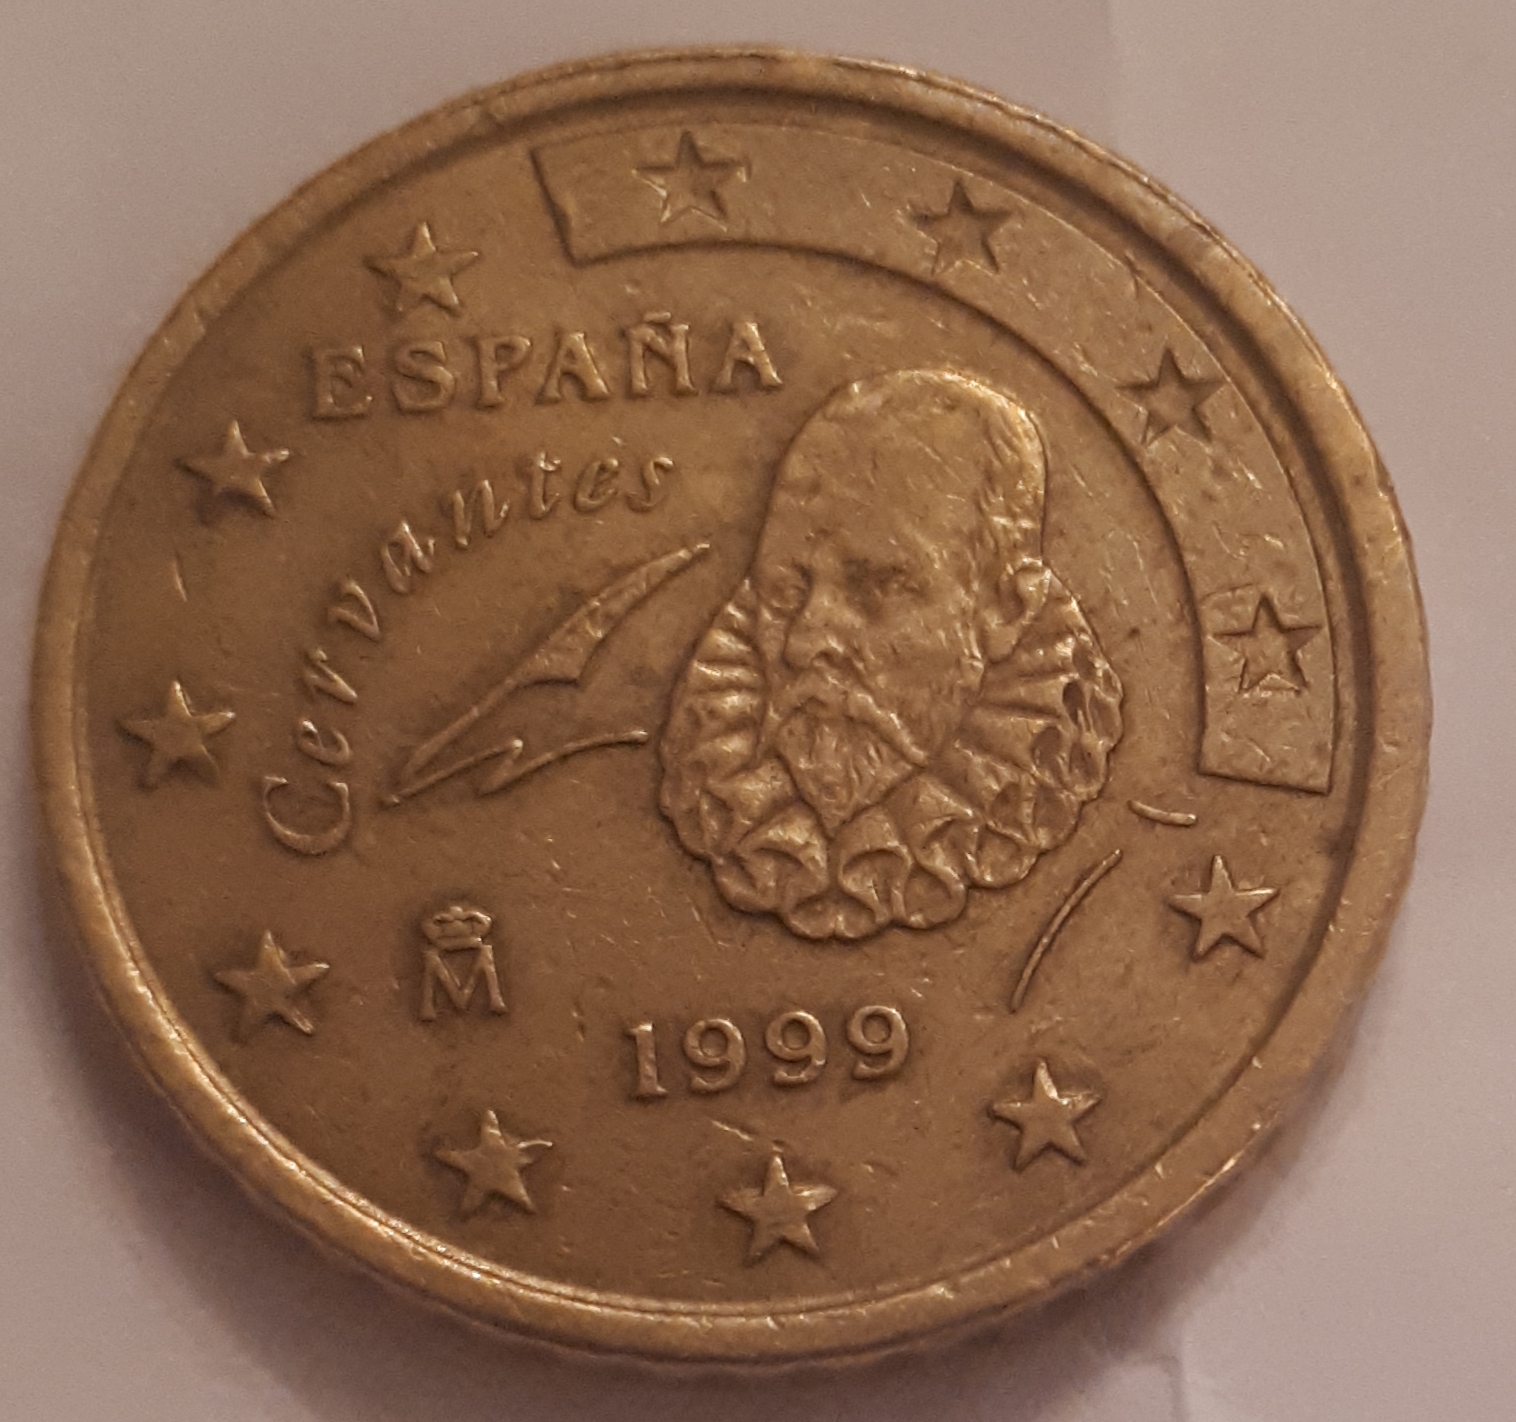 Spain 50 Cent Coin 1999 Euro Coins Tv The Online Eurocoins Catalogue